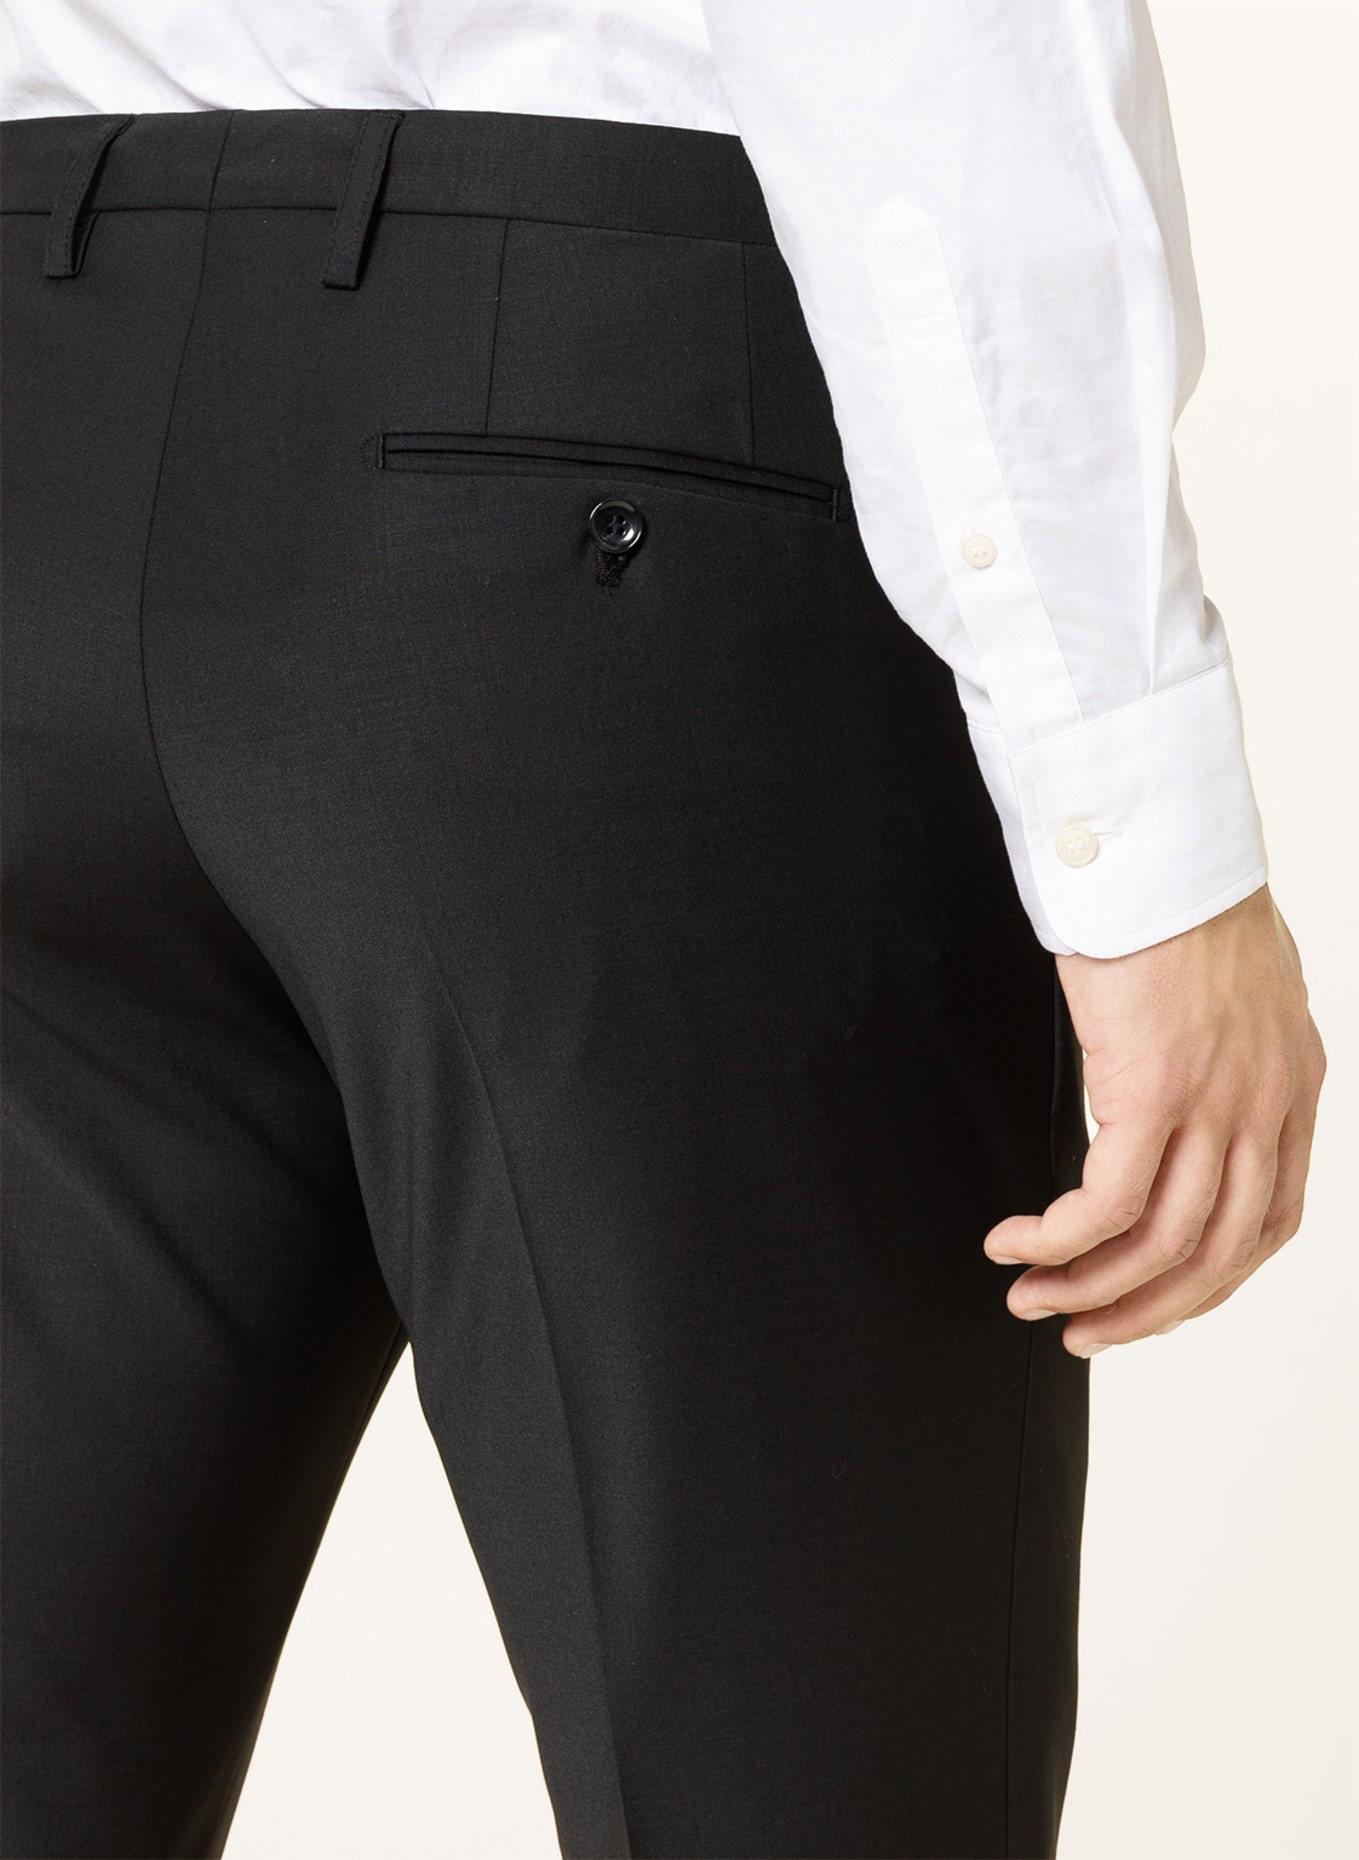 CINQUE Suit trousers CICASTELLO super slim fit, Color: 99 (Image 6)